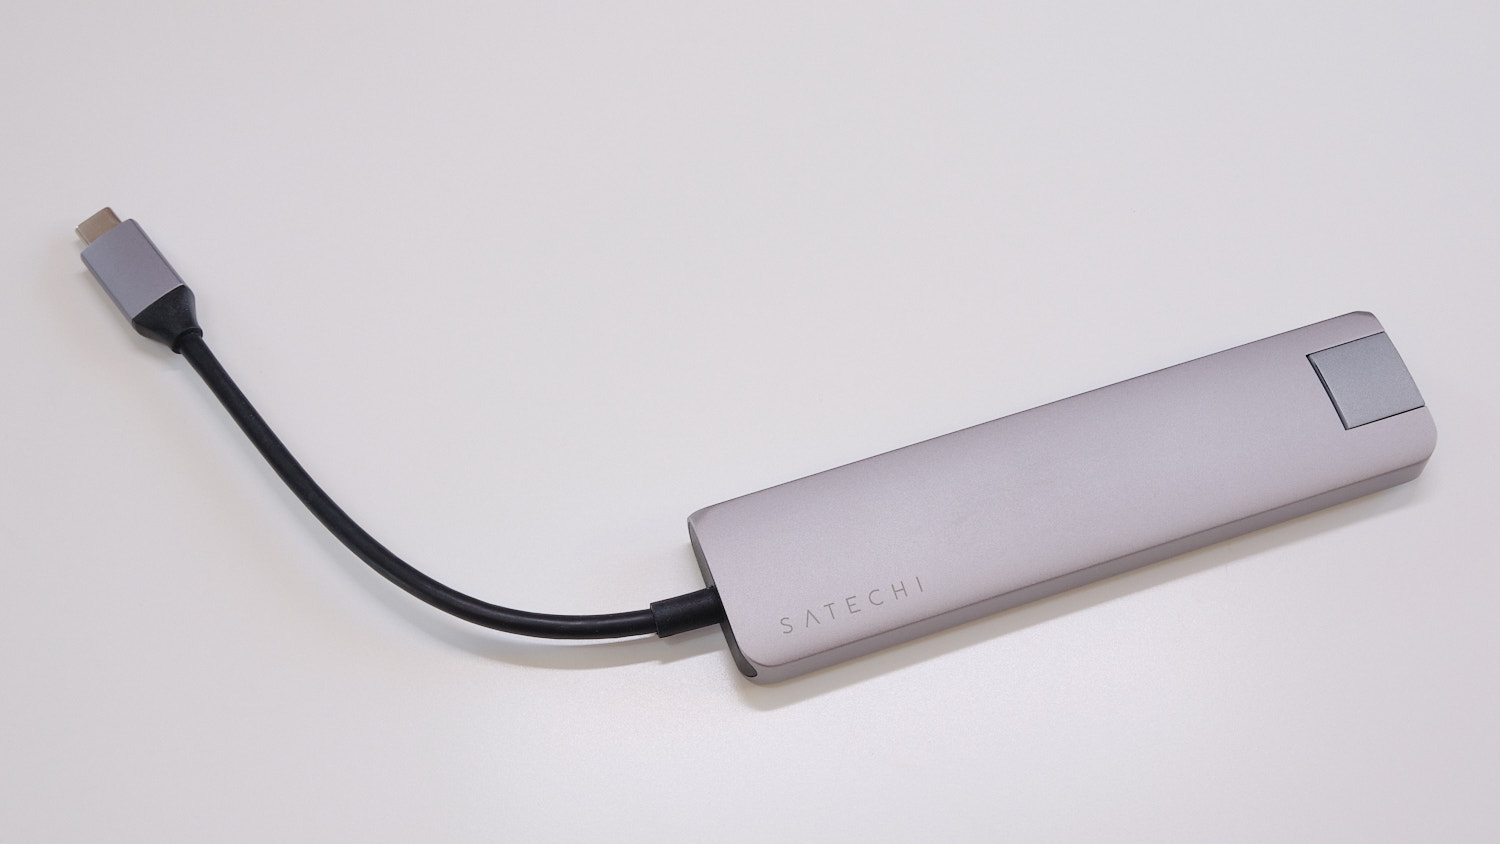 Satechi USB-C Slim Multiportadapter mit Ethernet – Kleinster Hub im schicken Kleid